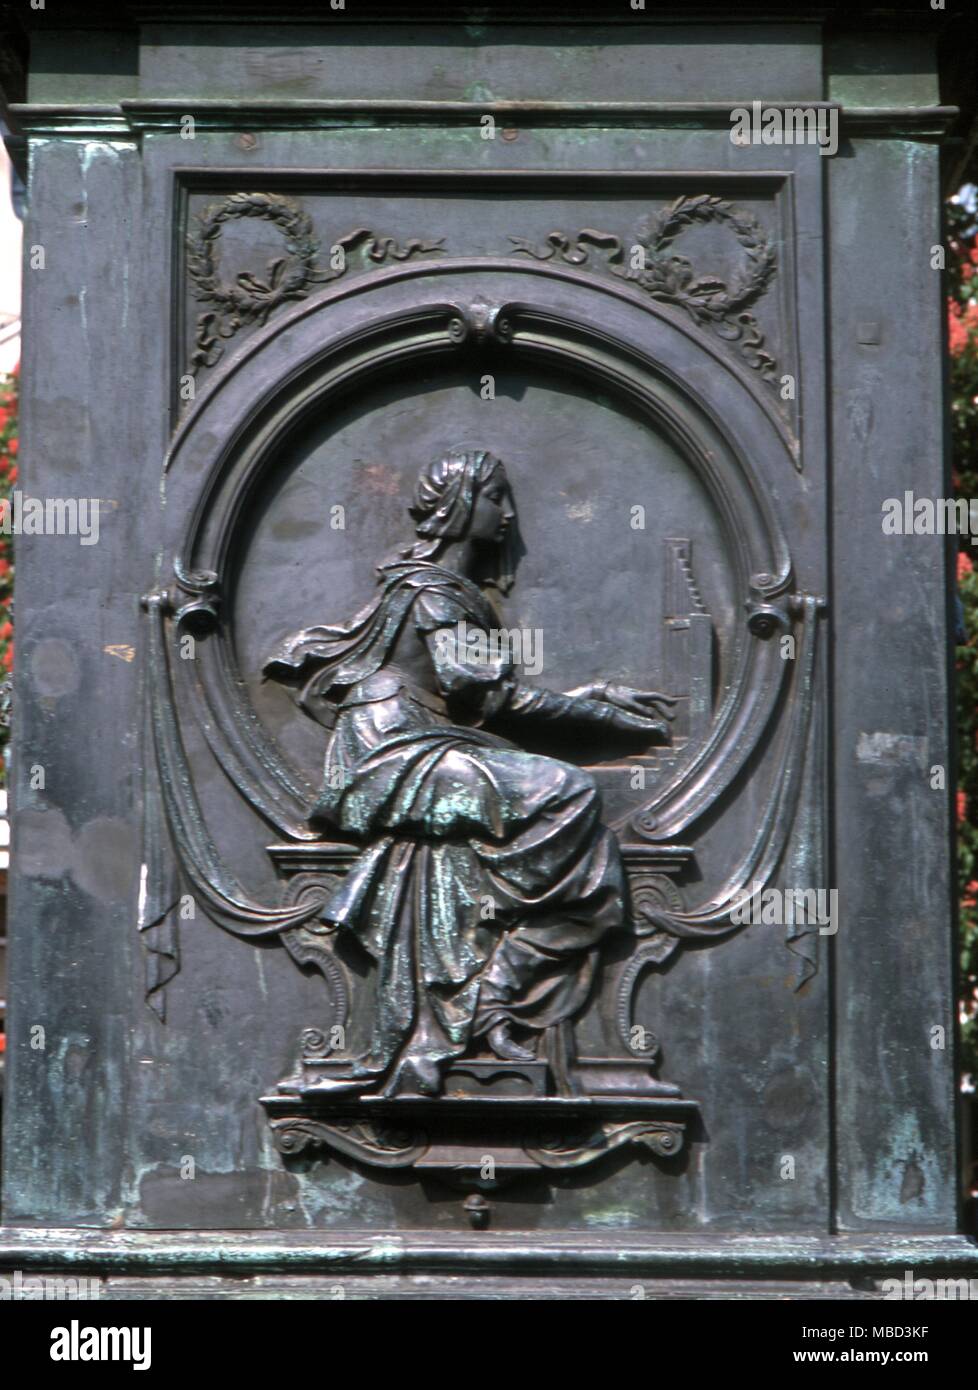 Musique - Symboles personnification de la musique, le piano. La figure sculptée sur le socle de la statue de Beethoven, à Bonn. Banque D'Images